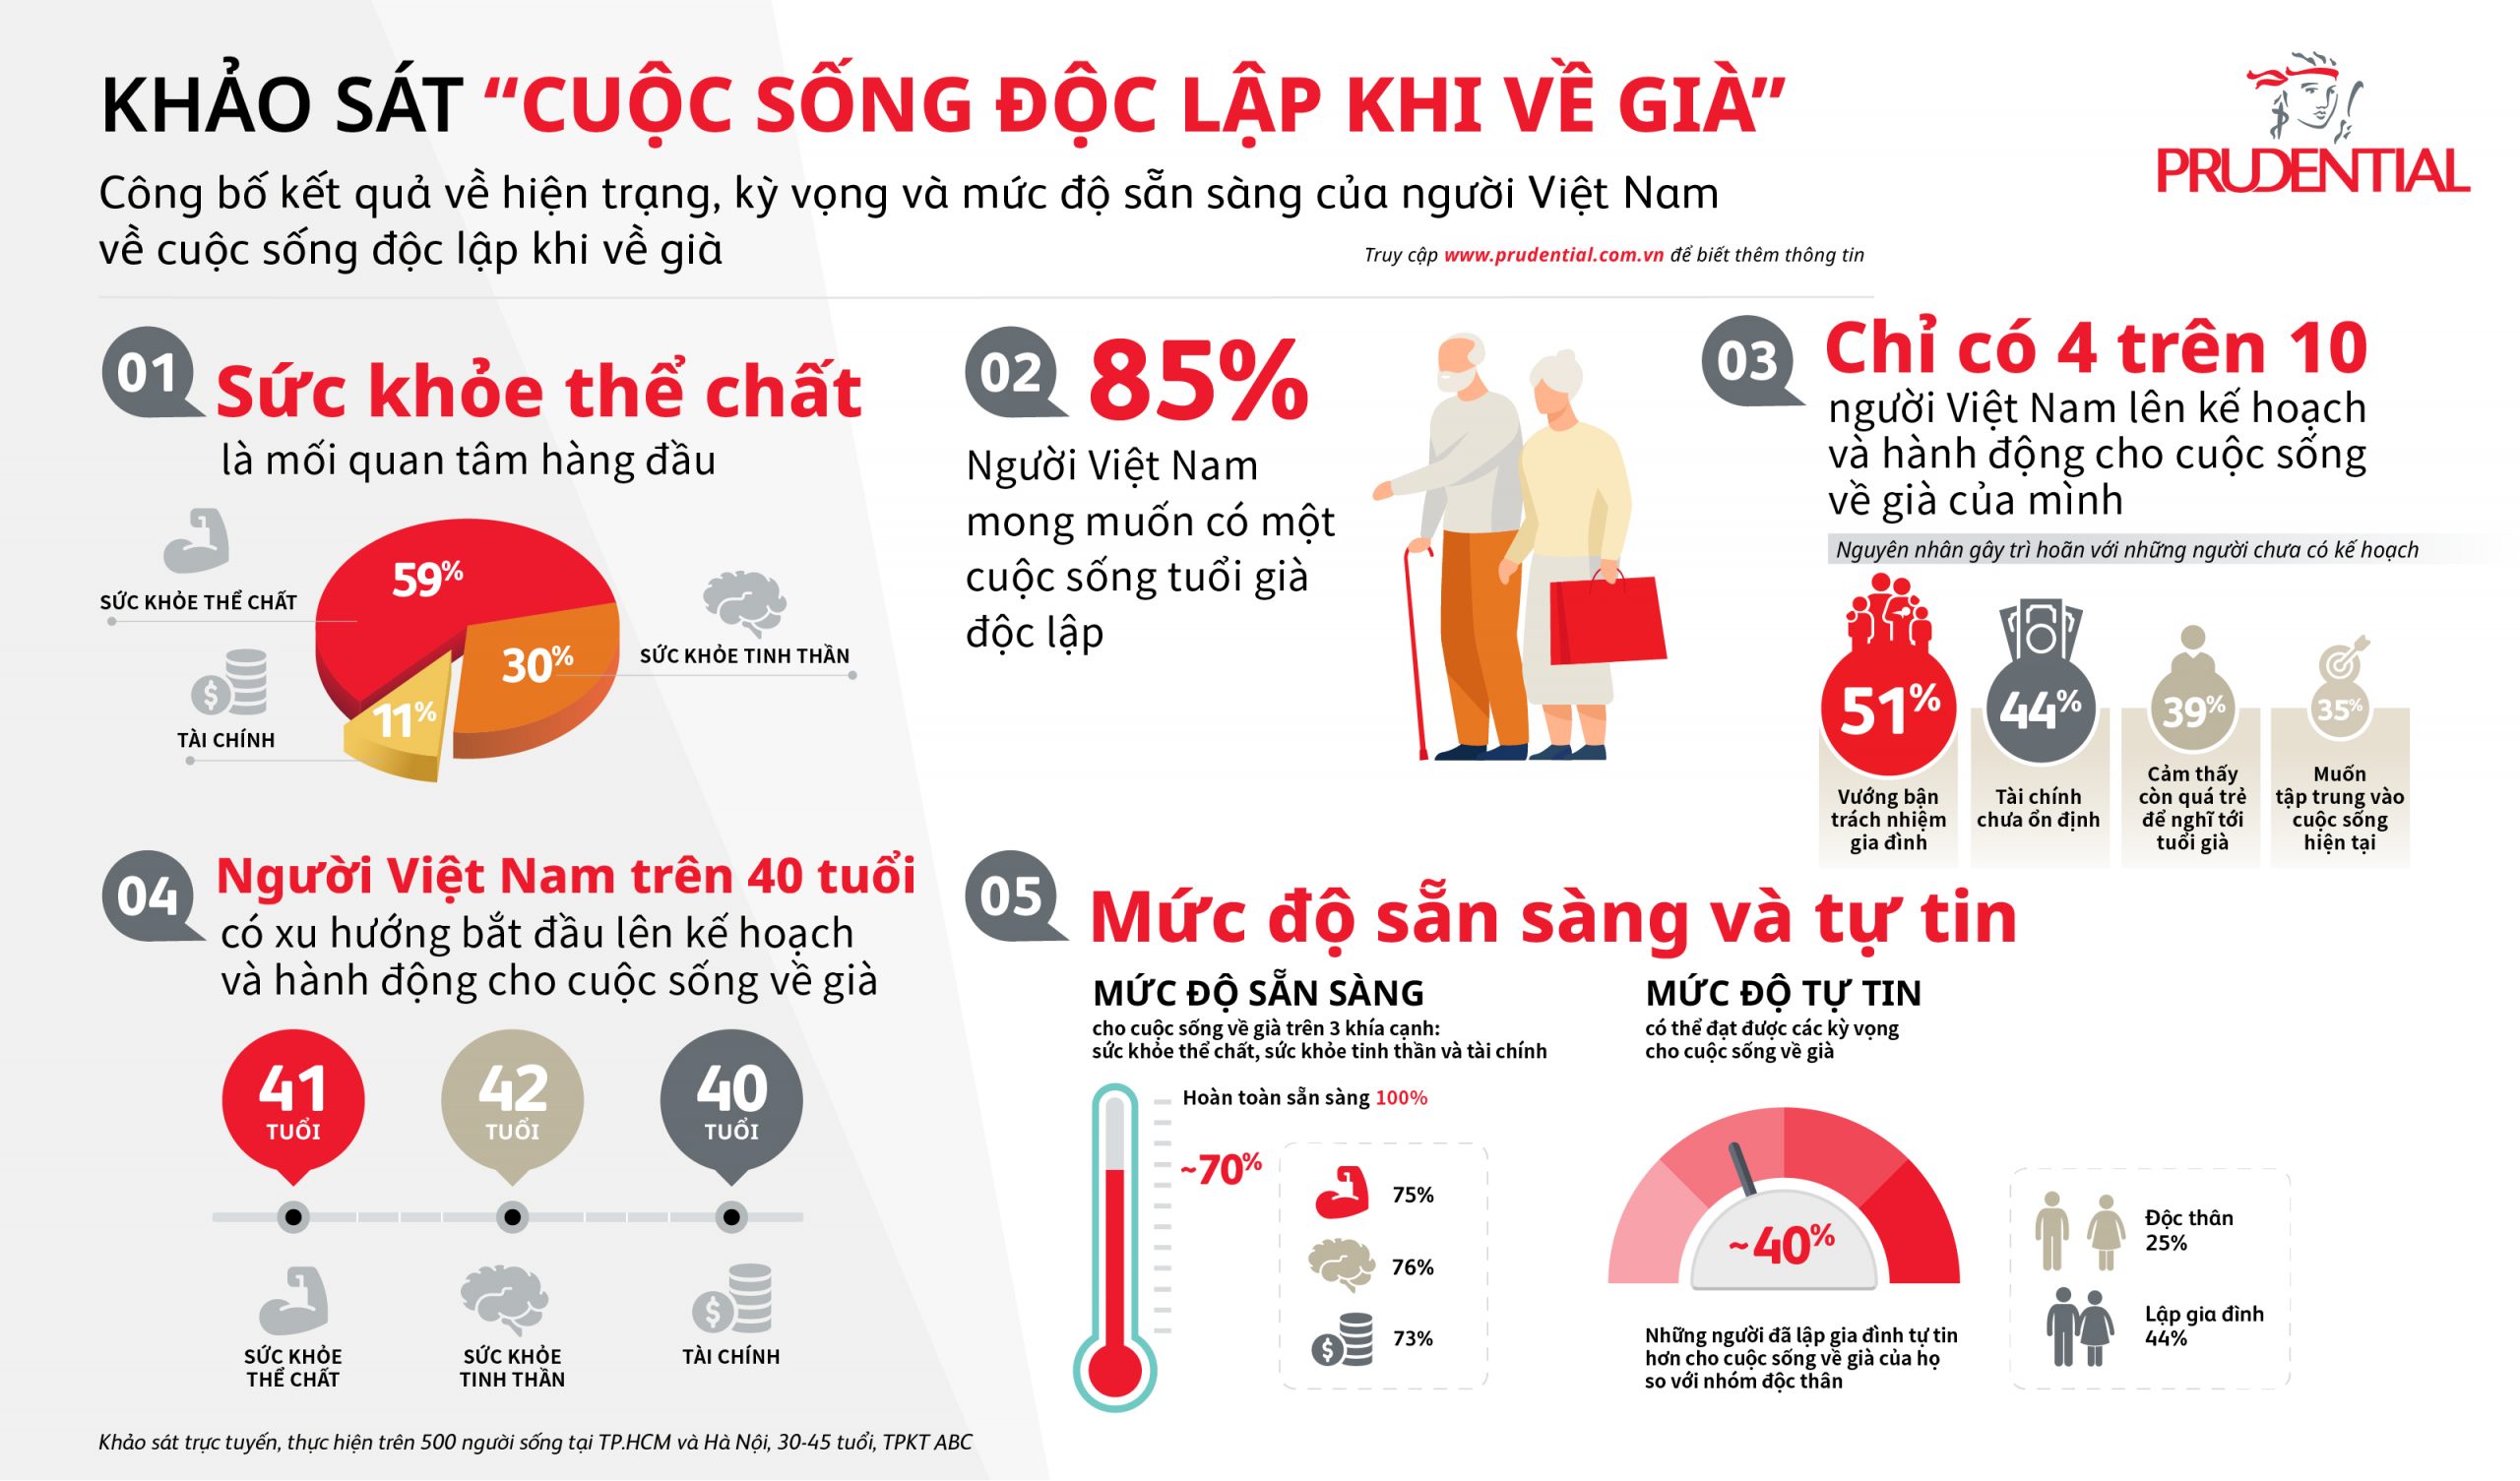 Khảo sát “Cuộc sống độc lập khi về già”: Chỉ có 4 trên 10 người Việt Nam lên kế hoạch và hành động cho cuộc sống về già 1